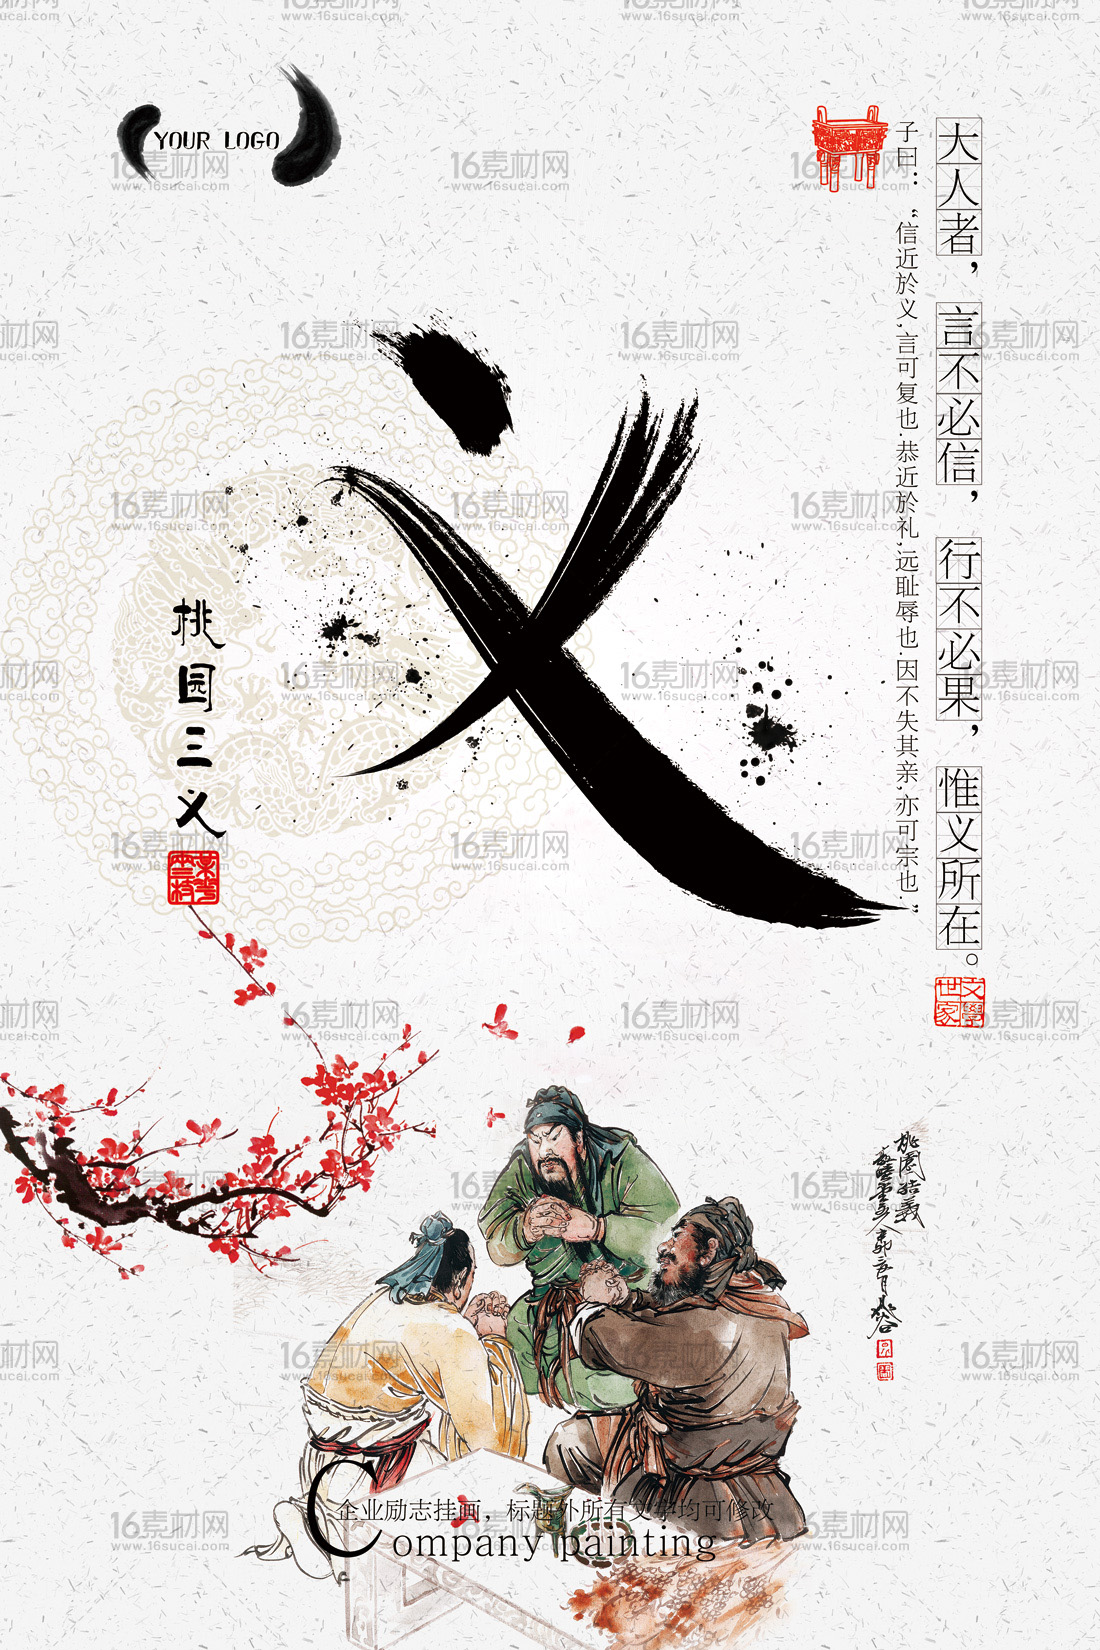 中国风企业文化宣传海报psd分层素材